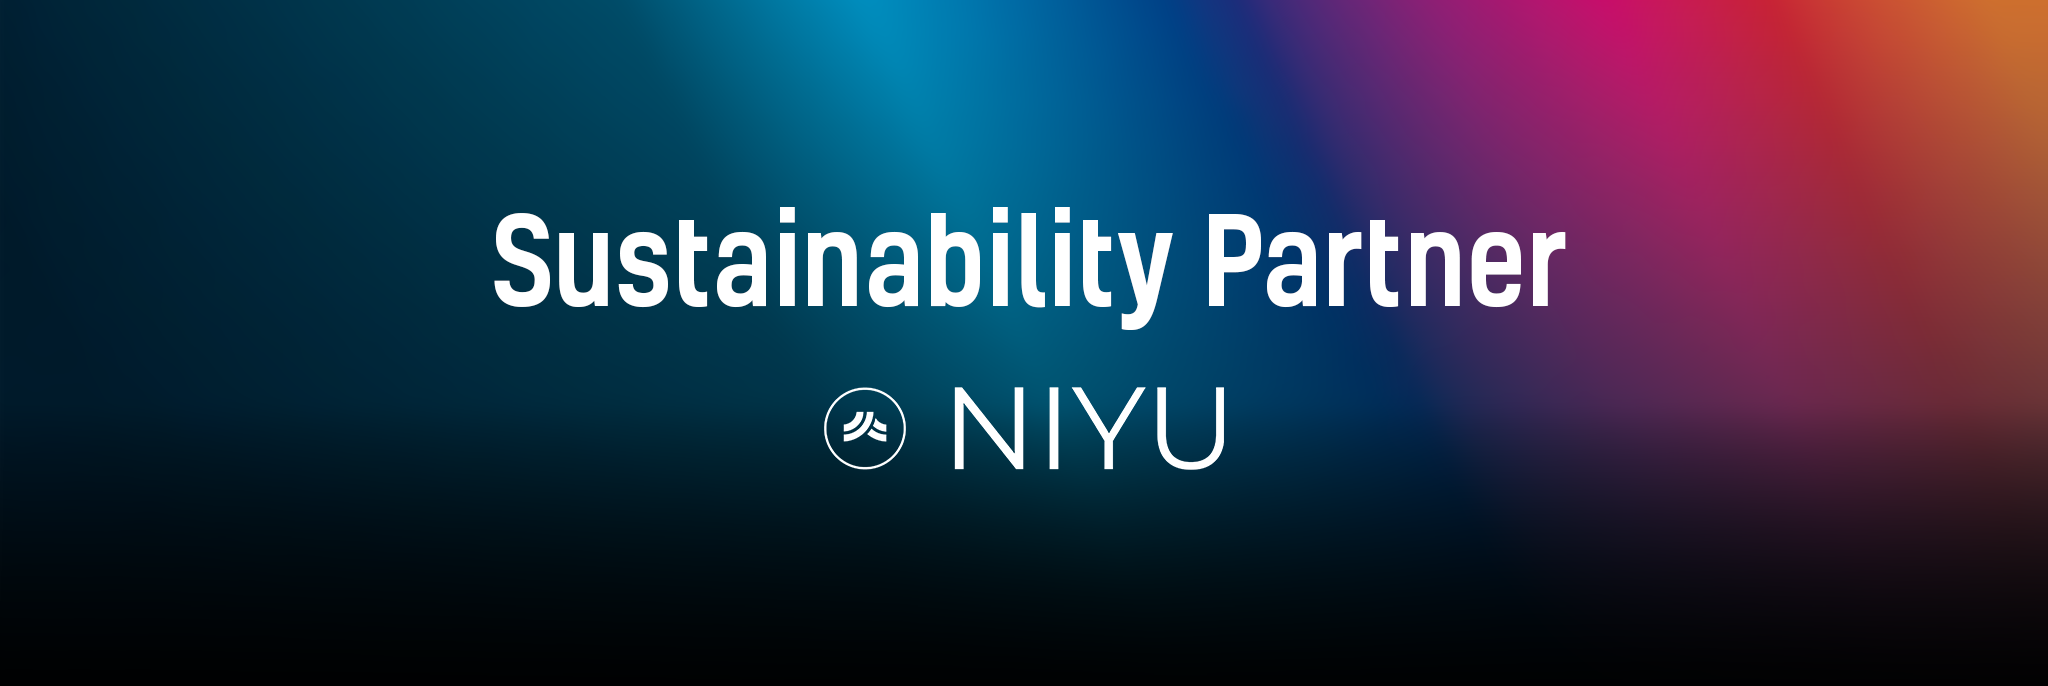 Banner Unterseite LEaT con - Nachhaltigkeit in der Veranstaltungswirtschaft mit unserem Sustainability Partner